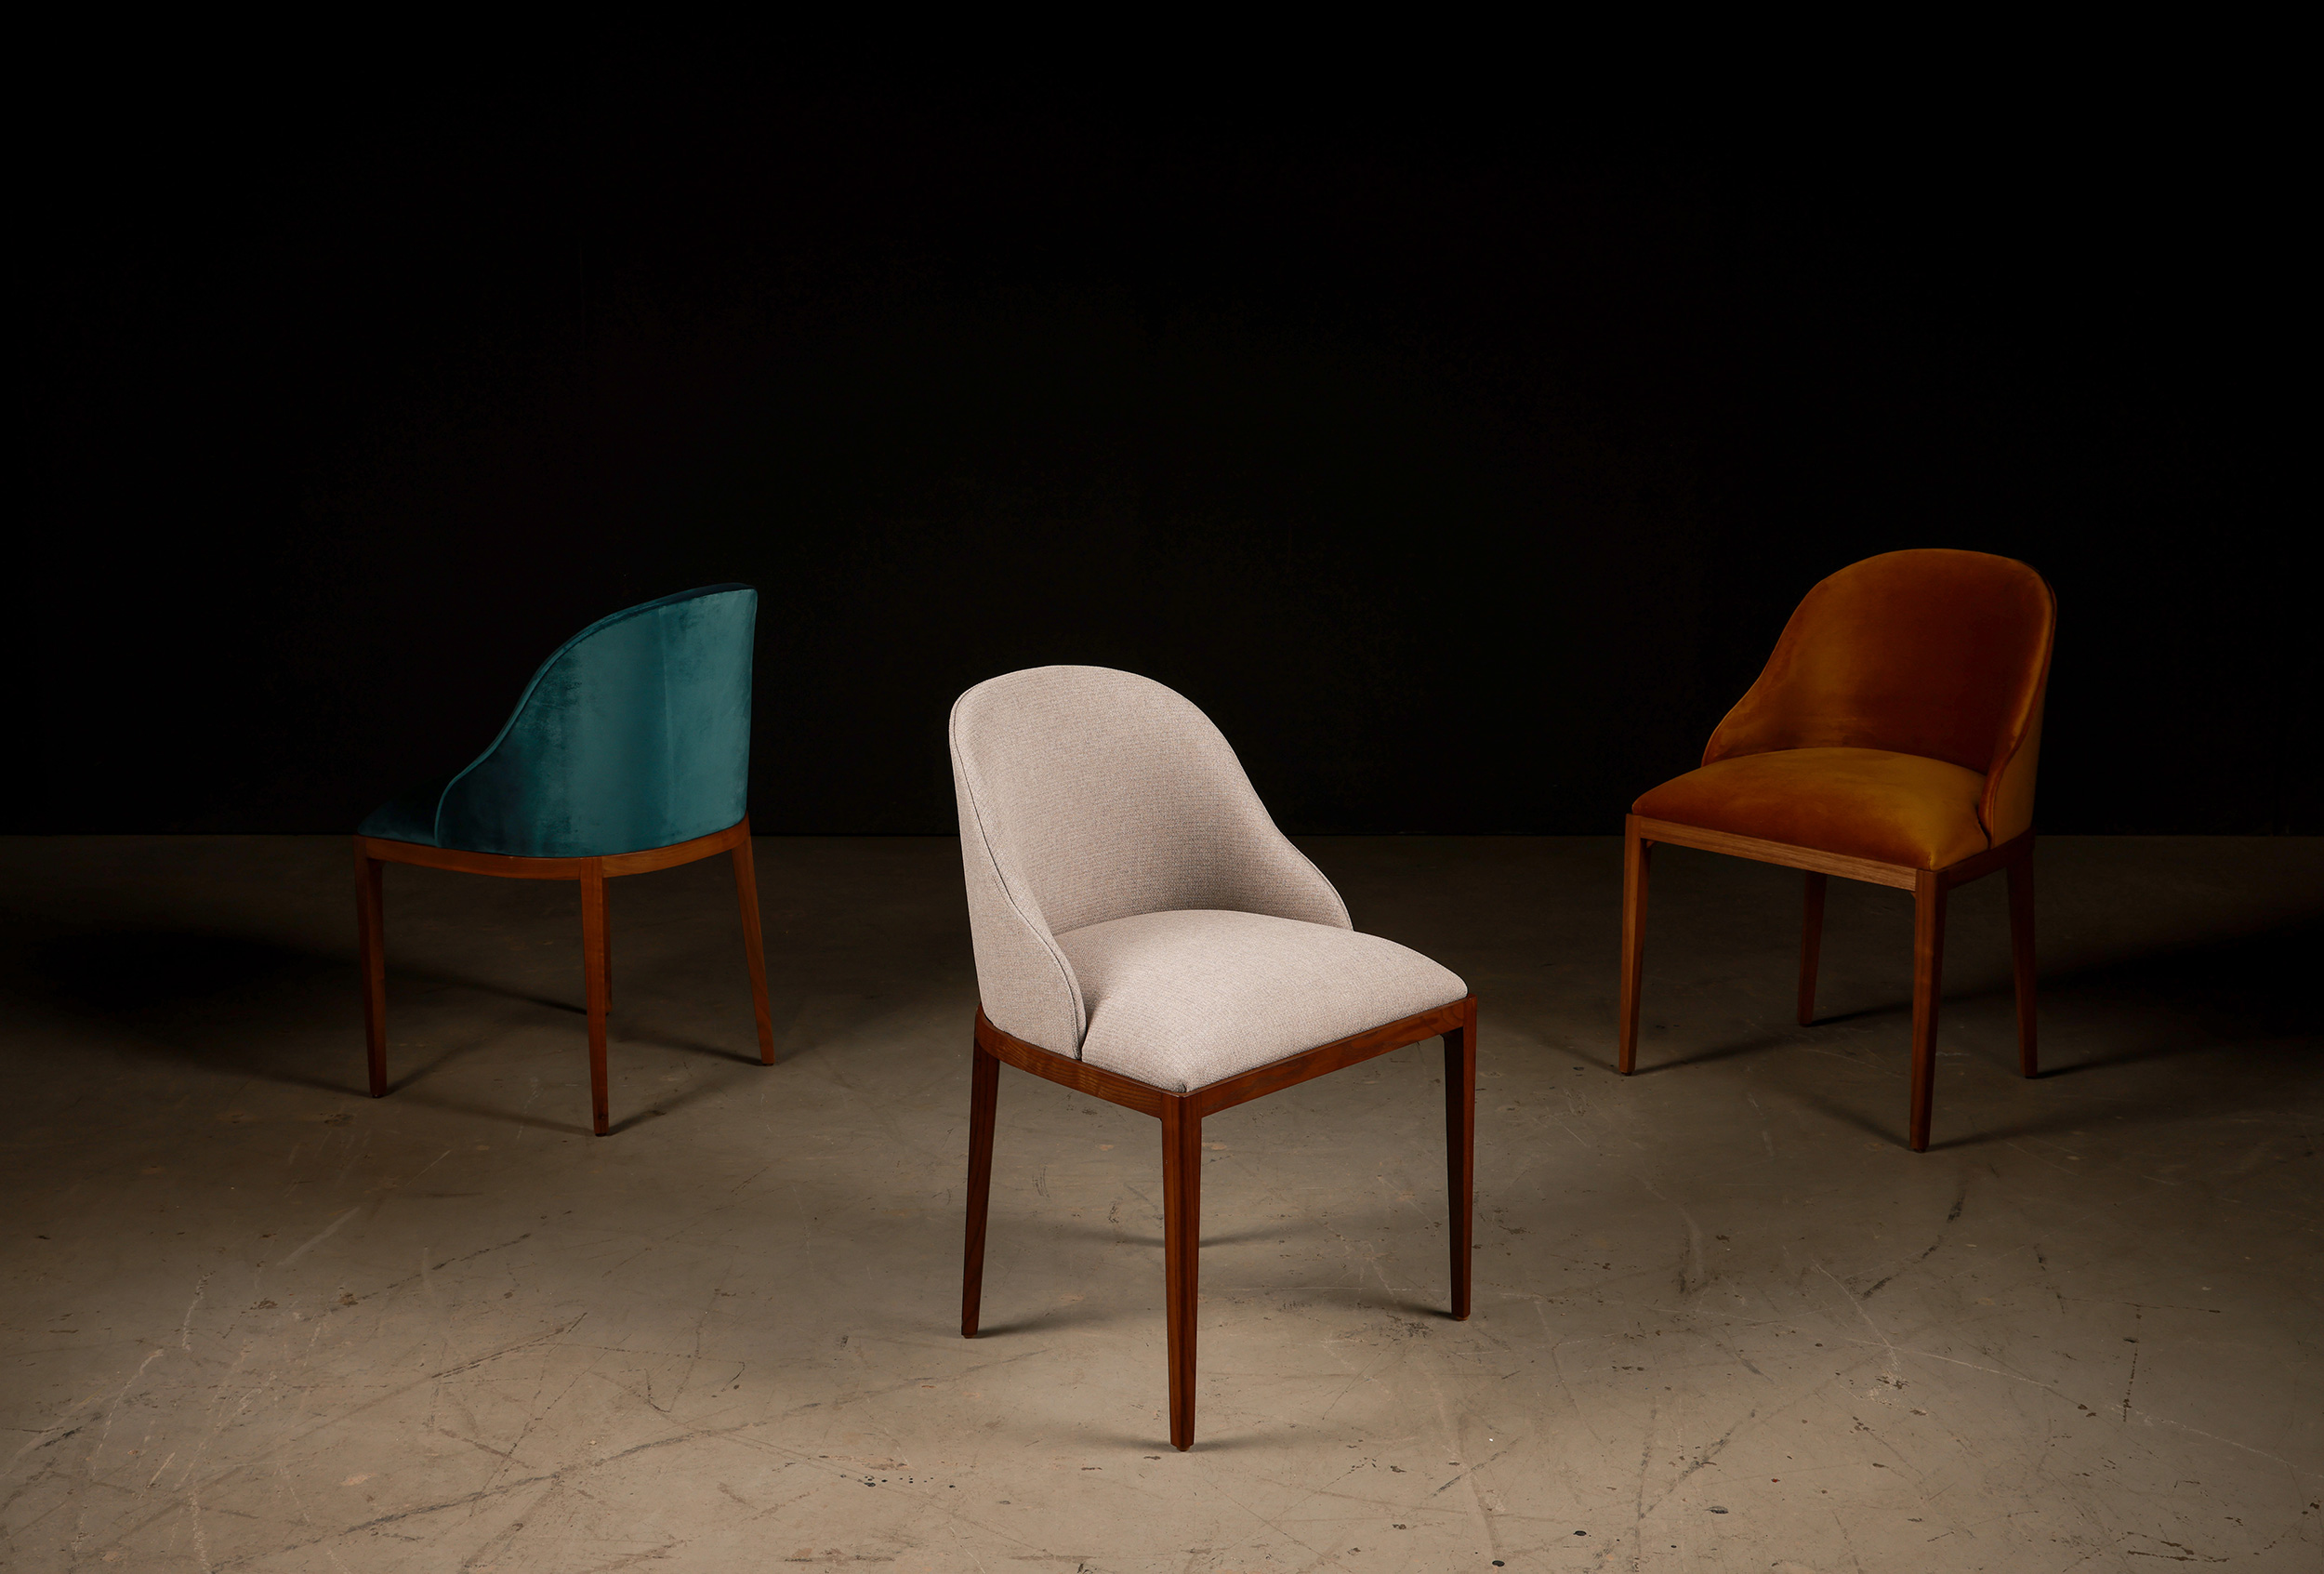 Custom upholstery ideas - restaurant dining chairs in velvet